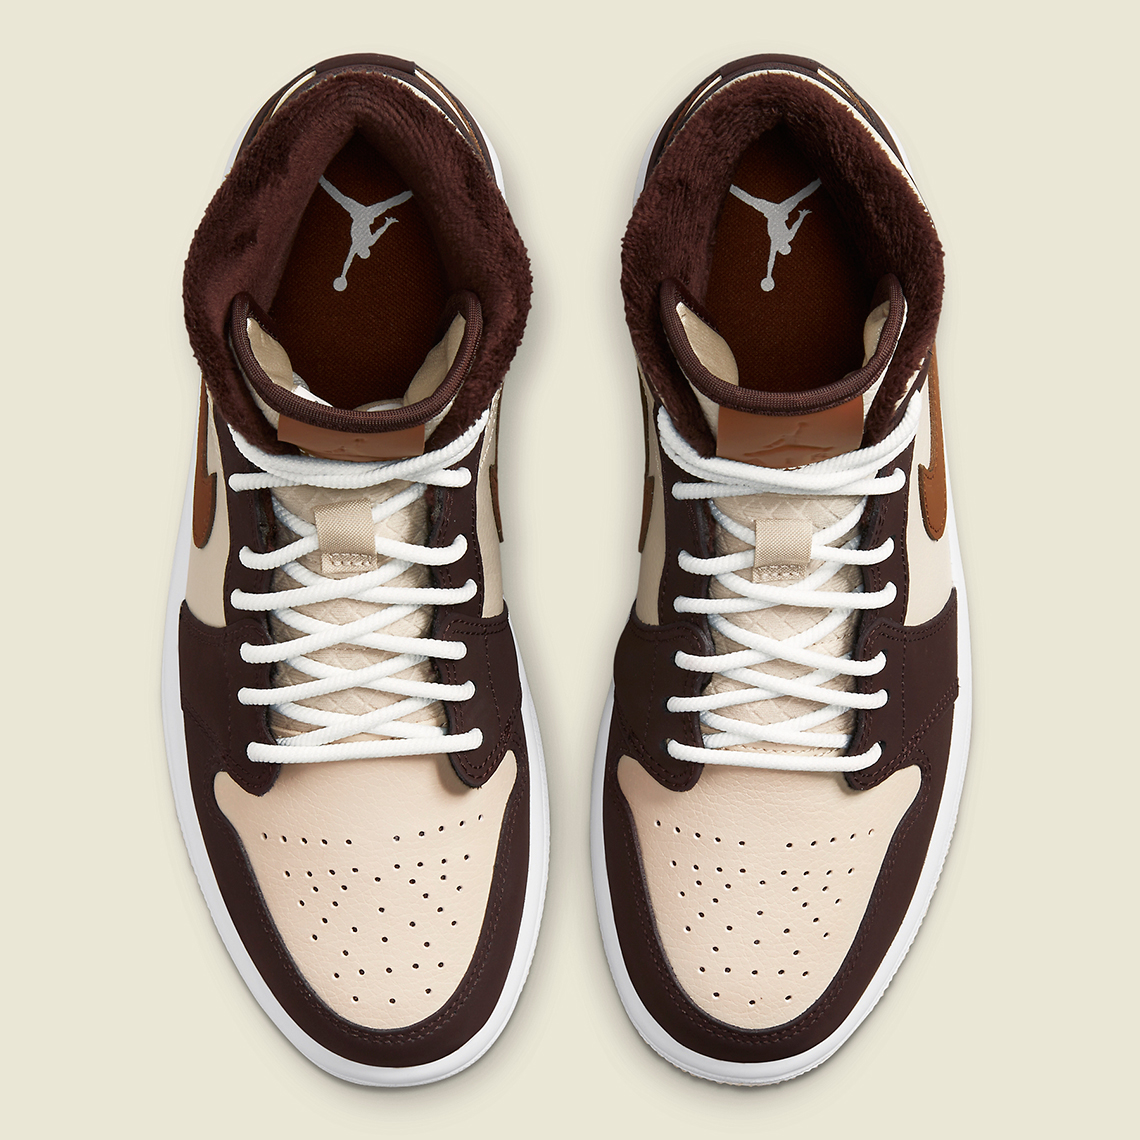 Air Jordan 1 Low “Mocha Brown” Release